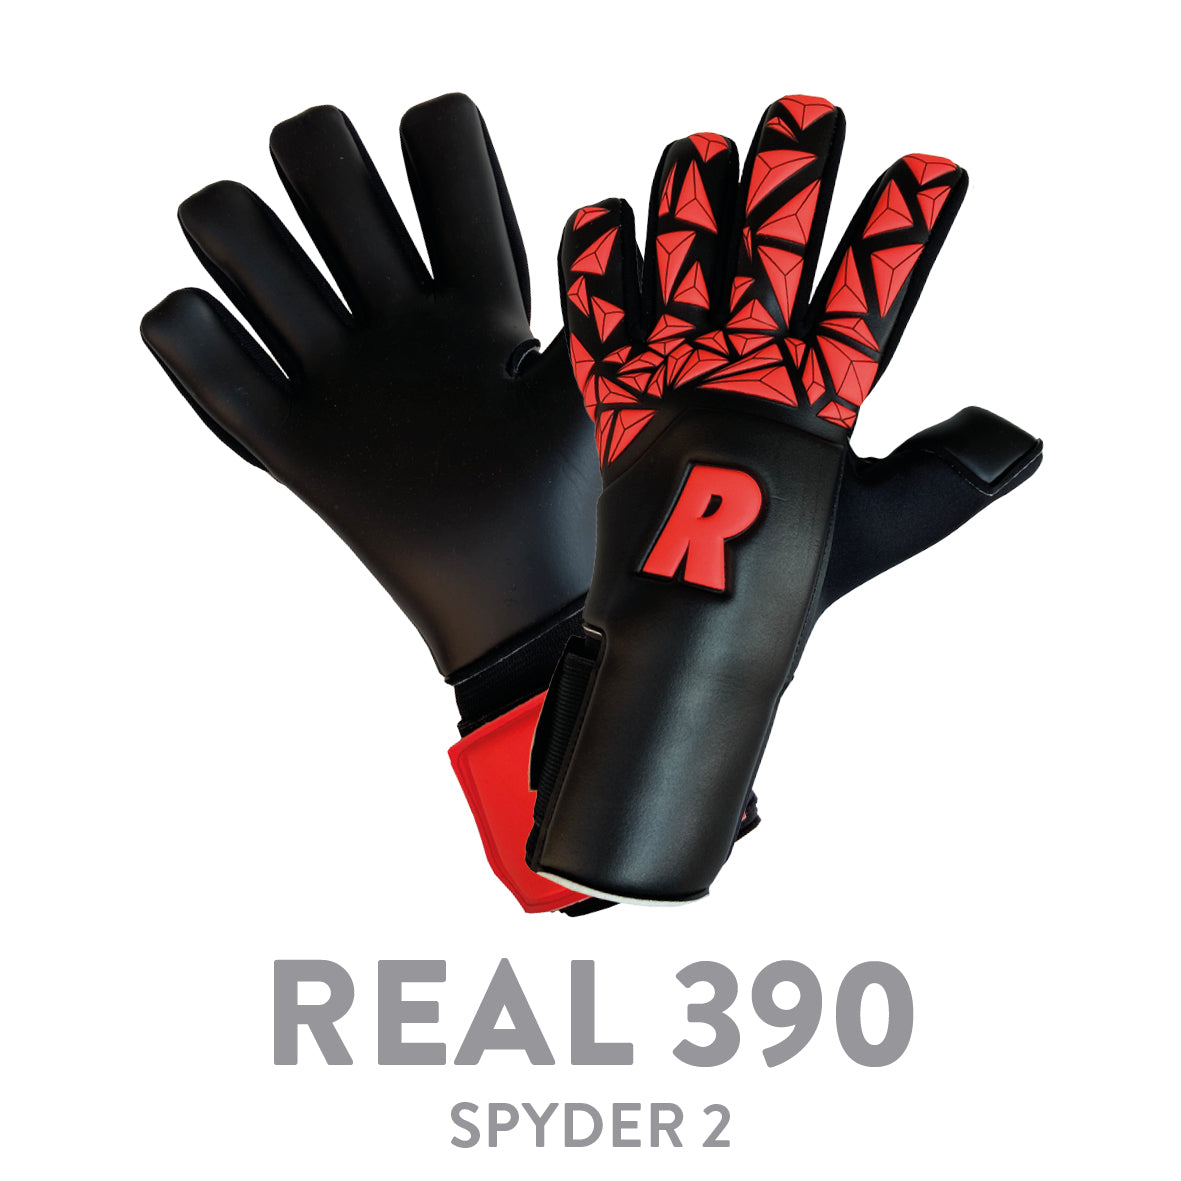 REAL 390 SPYDER 2 BLACK/RED